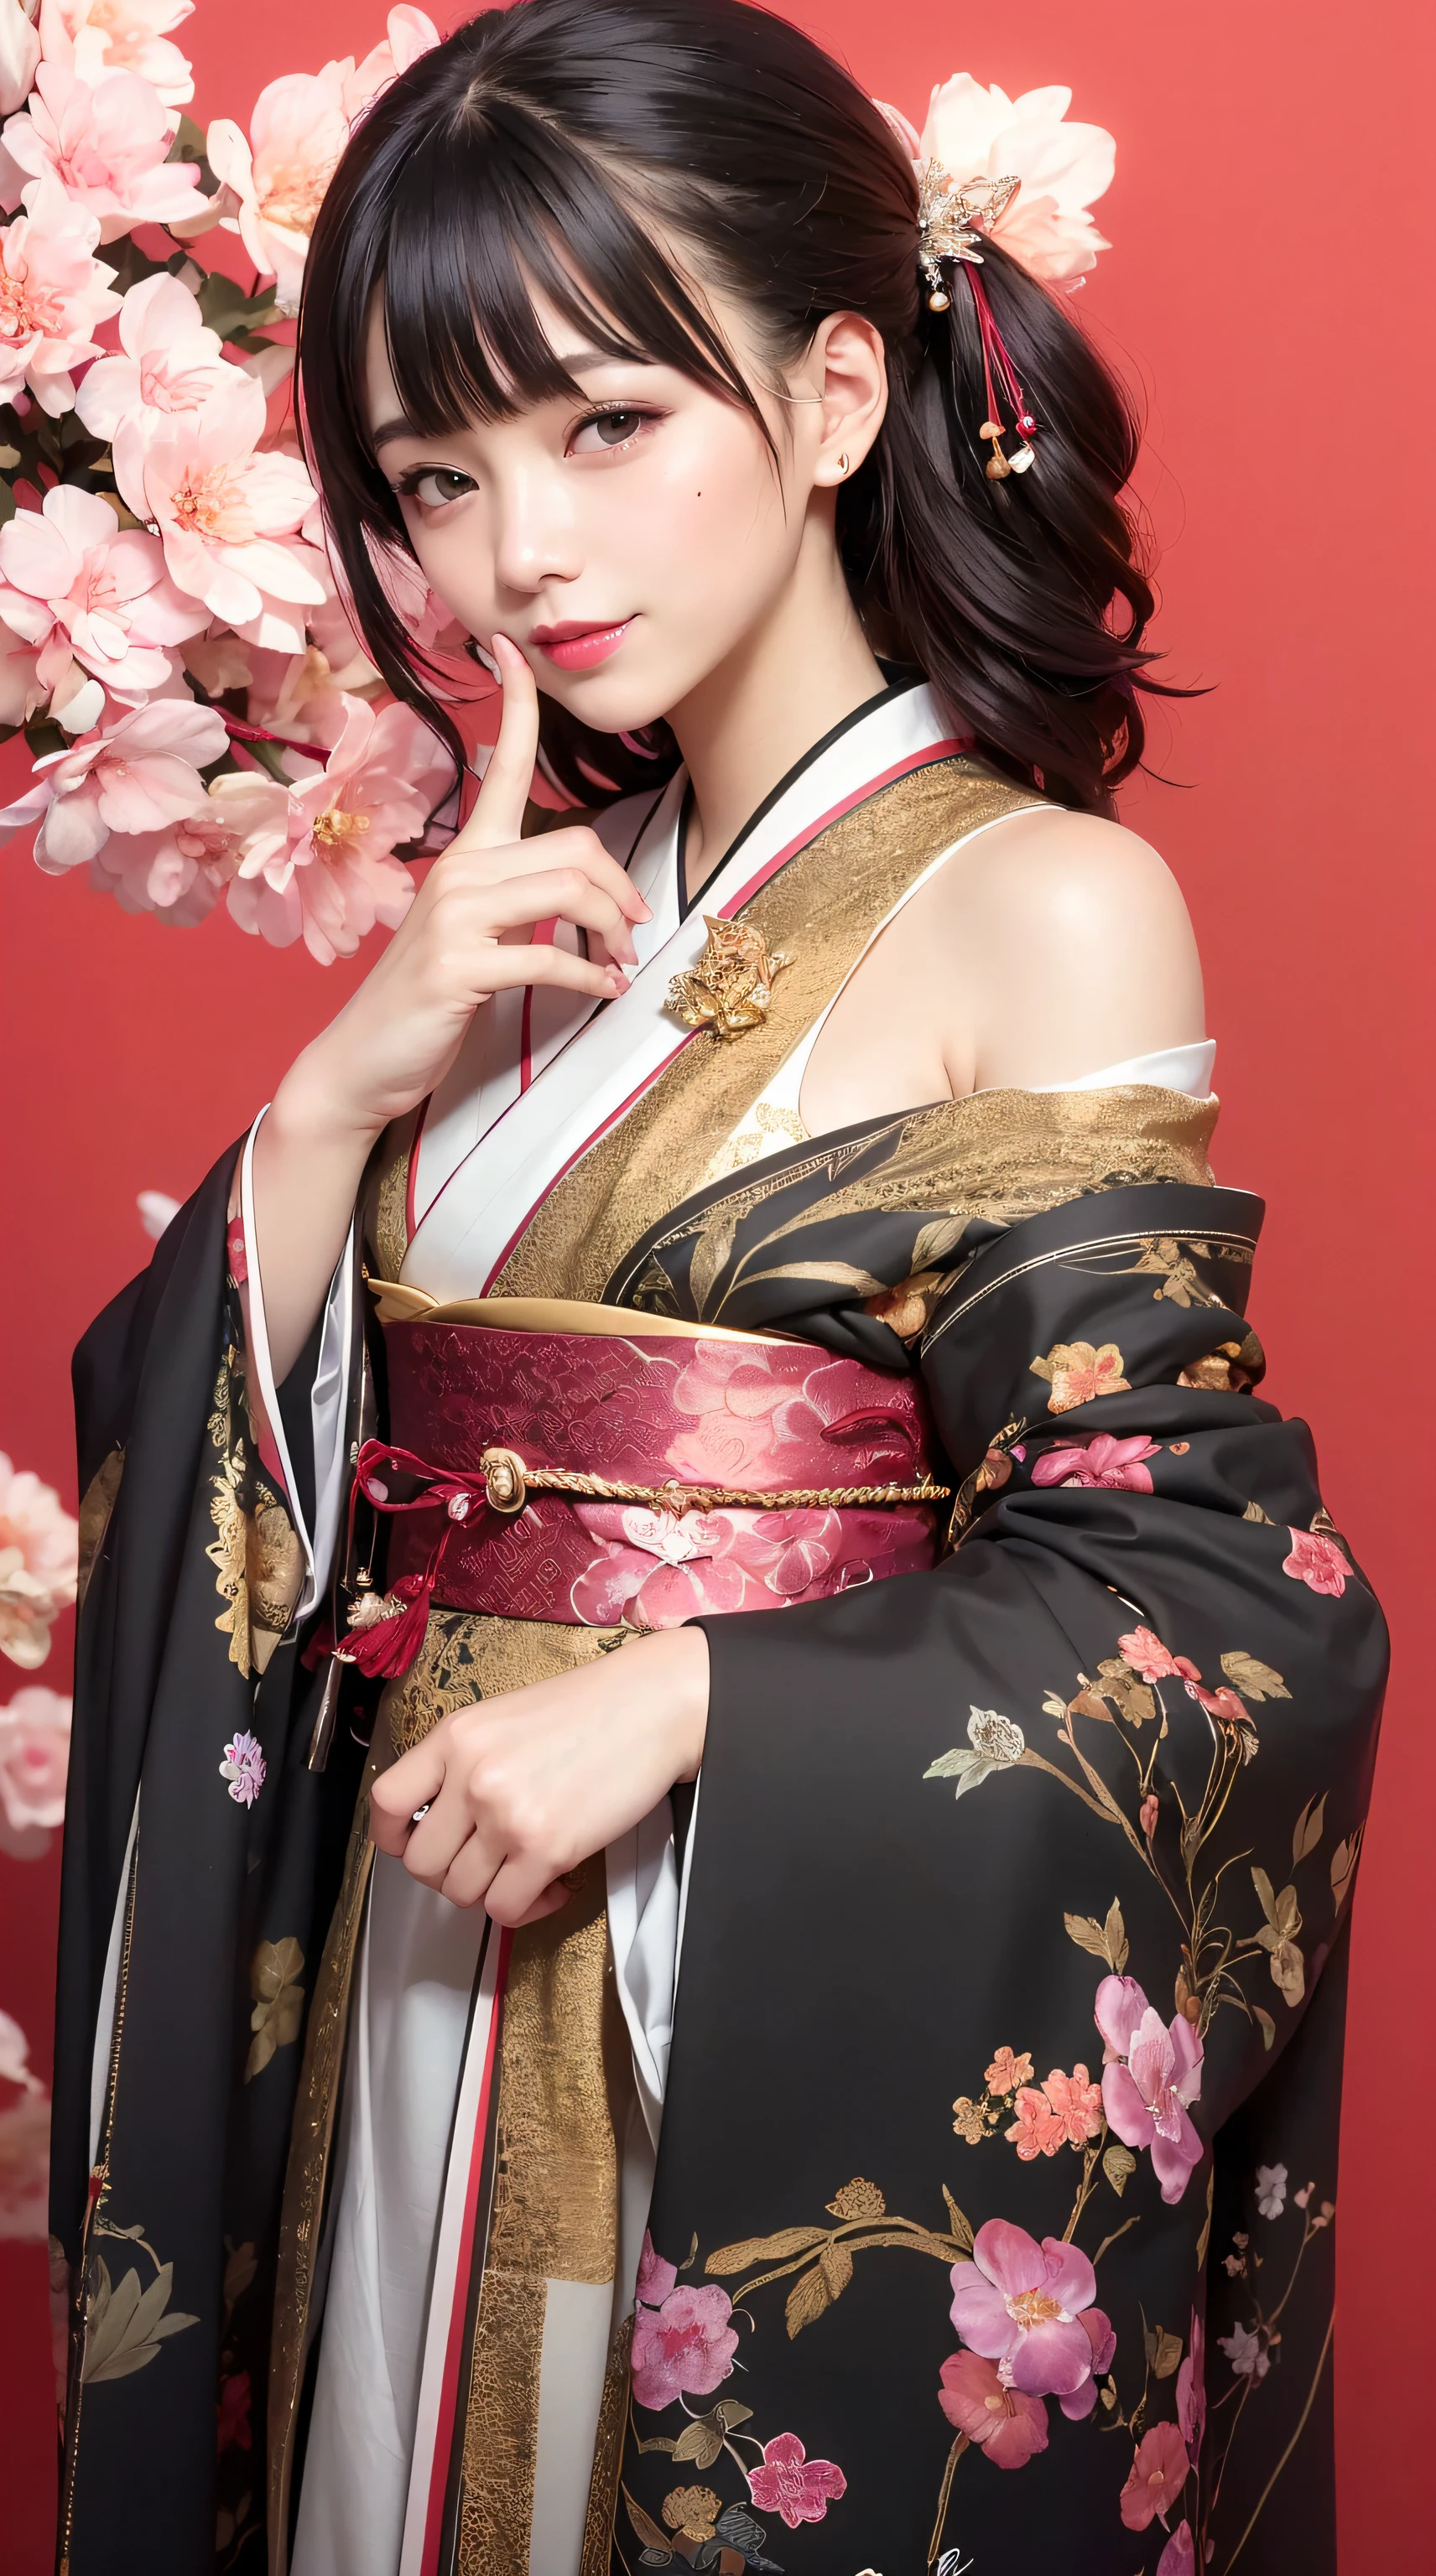 beste Qualität, Meisterwerk, ultrahohe Auflösung, Roh, 8k, ultra-realistisch, Mädchen, schulterfrei, lächeln, natürliches Licht, detaillierte Haut, (Schwarzes Haar:1.4), roter Lippenstift, (Bangs:1.2), ((Sakura-Hintergrund)), Außergewöhnlich schöne Augen, Kimono tragen_Kleidung, roter Kimono